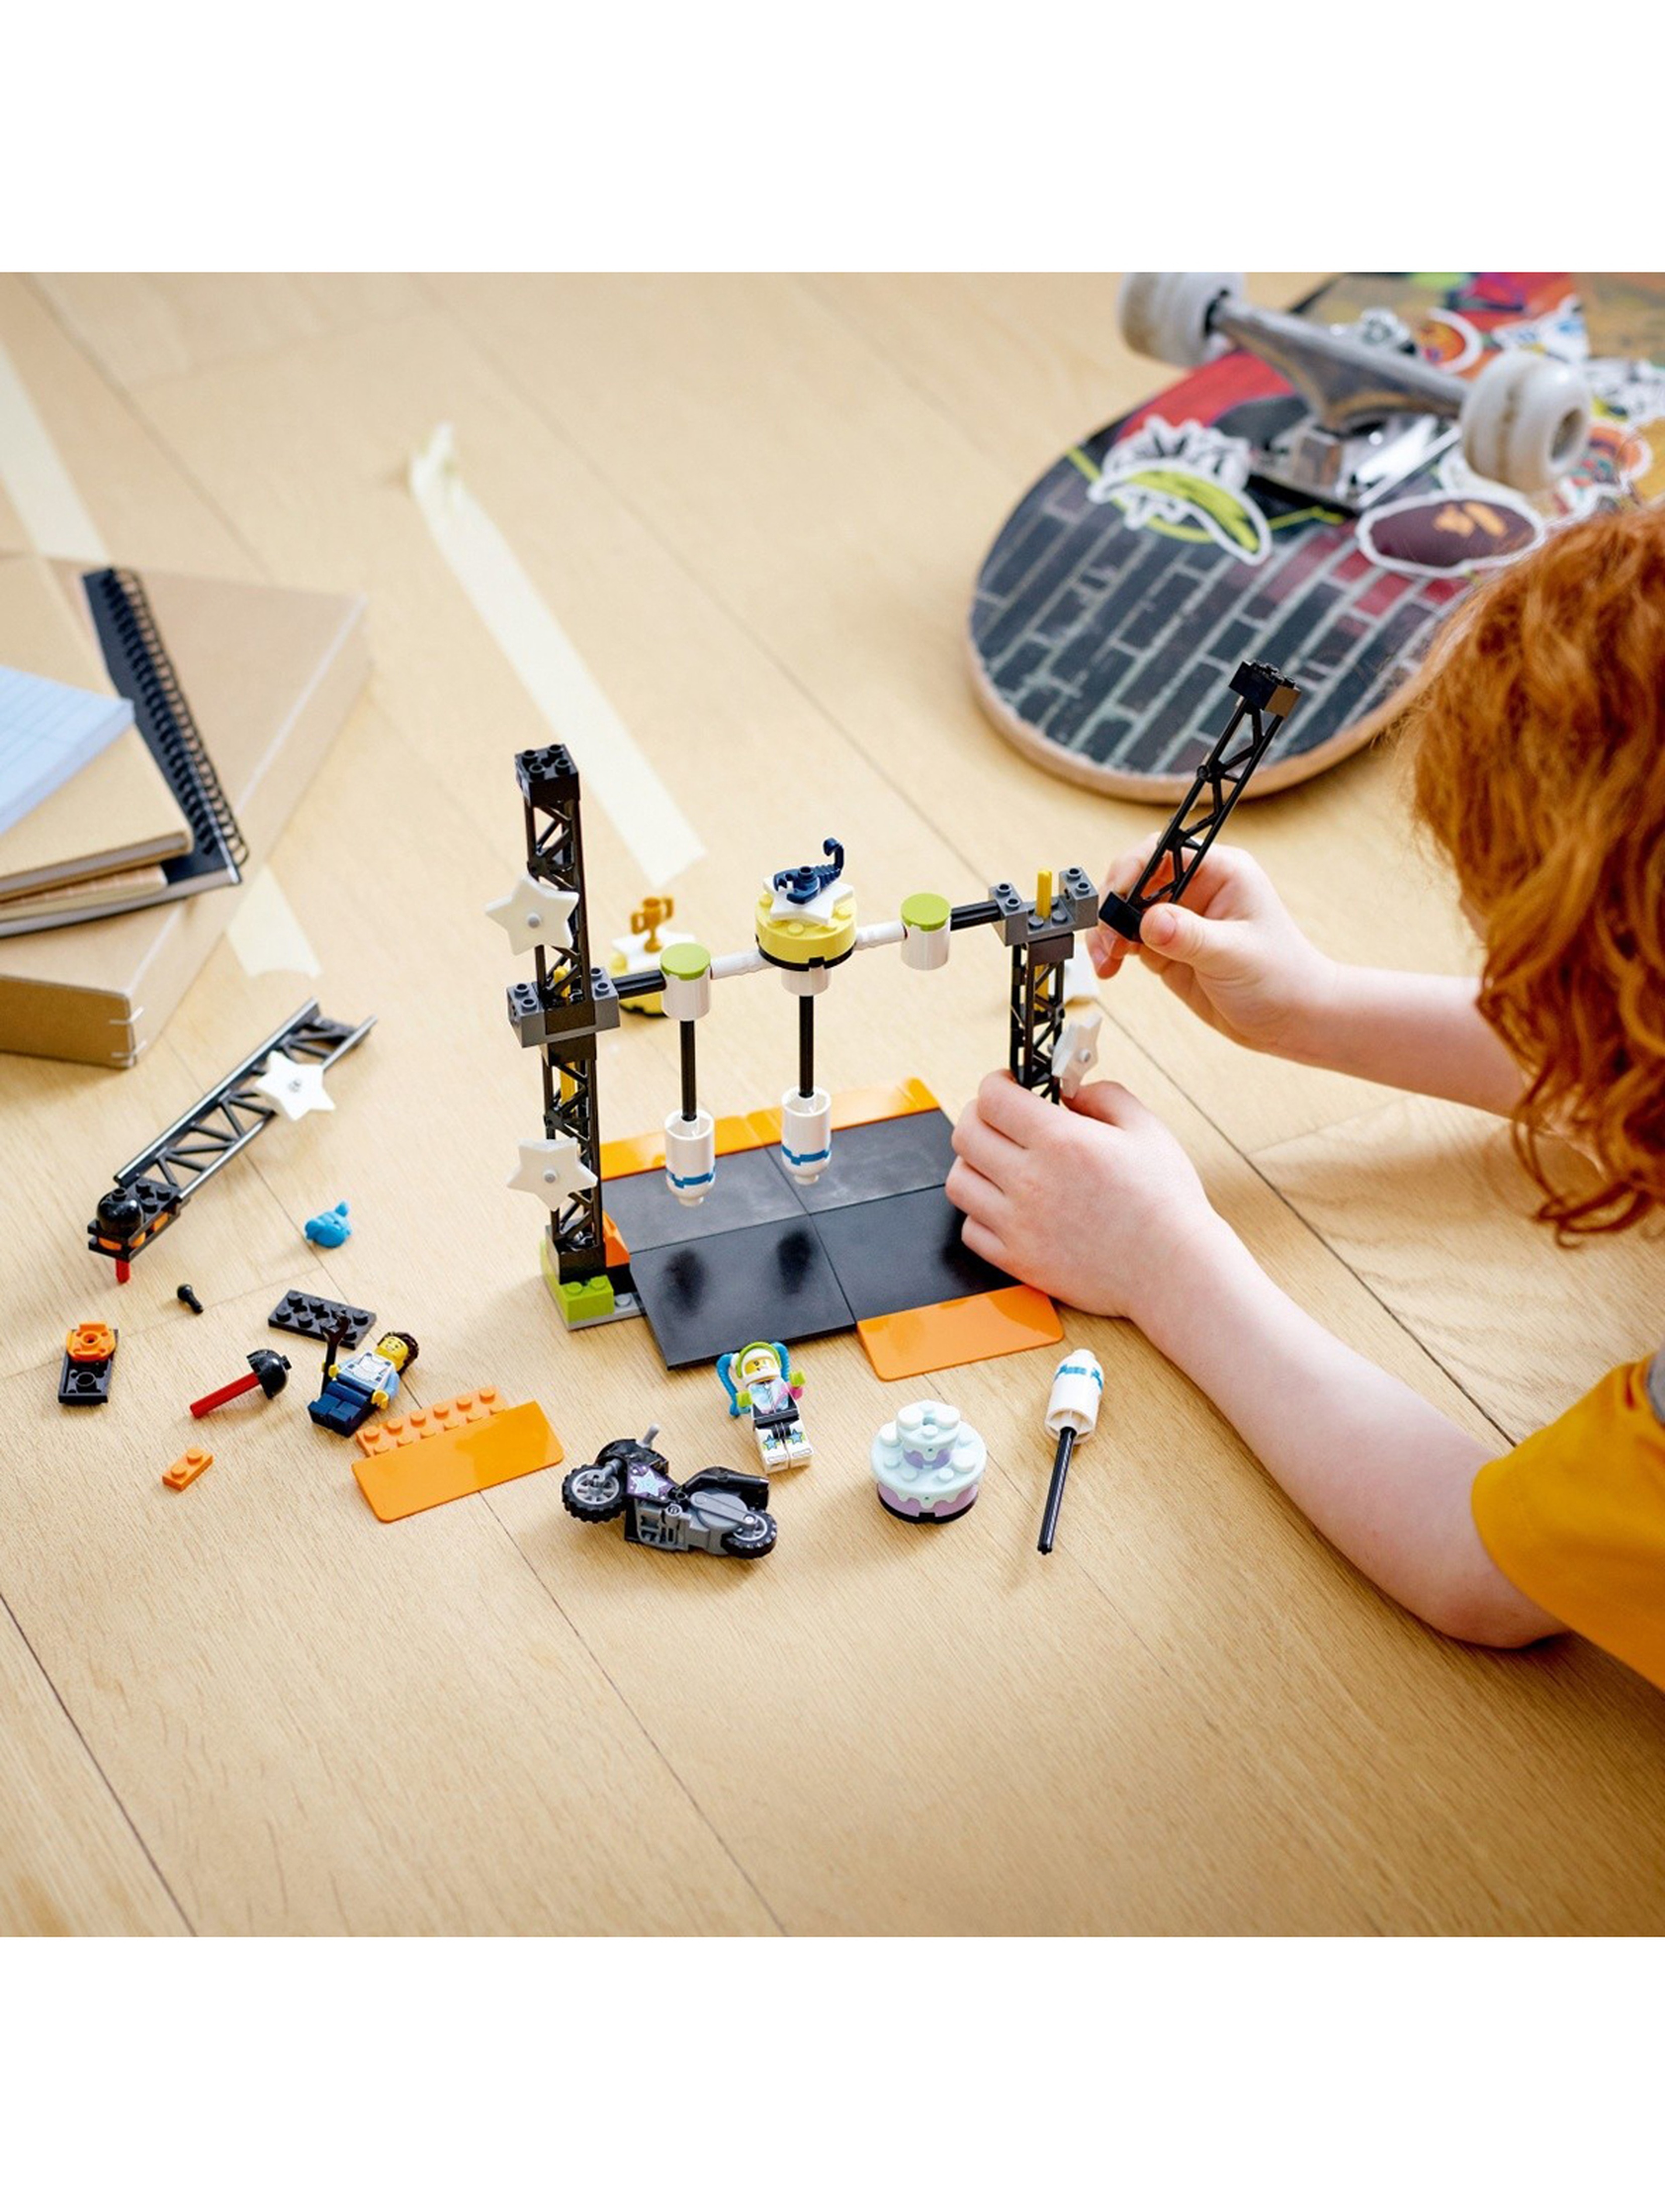 LEGO City - Wyzwanie kaskaderskie: przewracanie 60341 - 117 elementów, wiek 5+